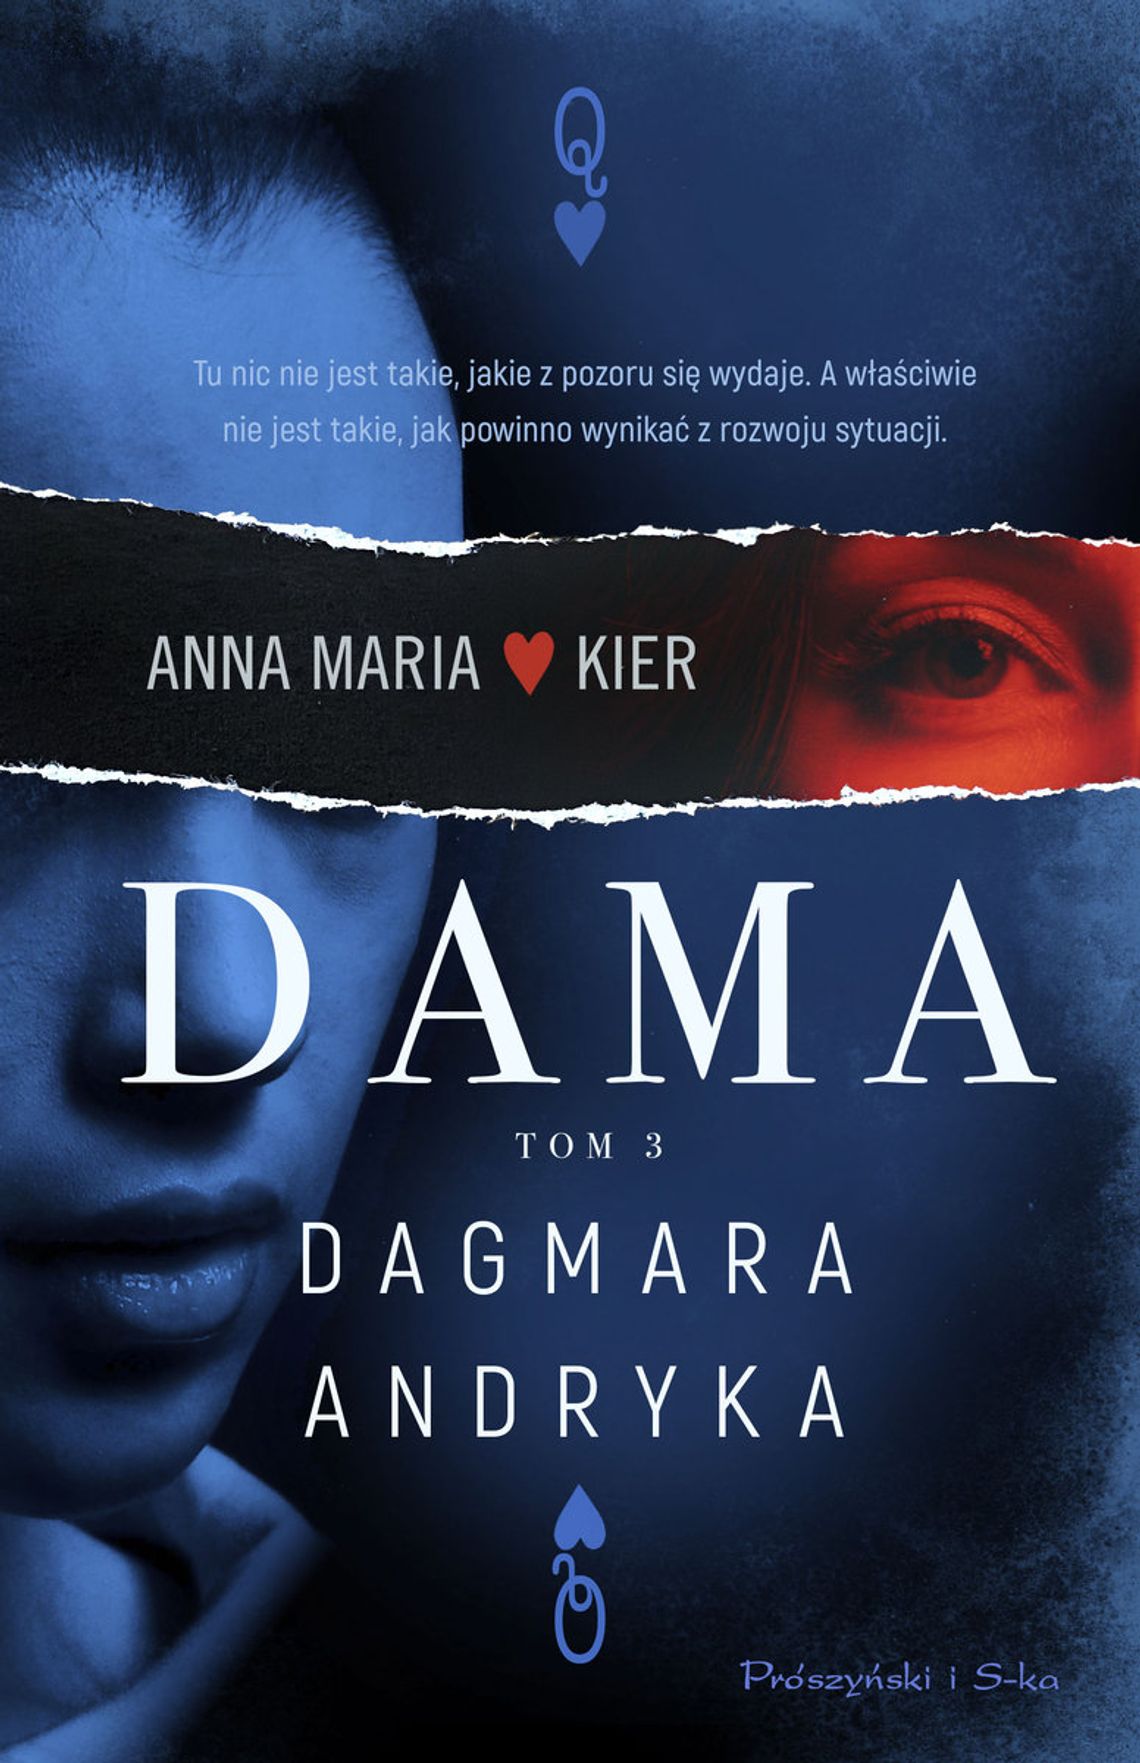 "Dama" - Dagmara Andryka